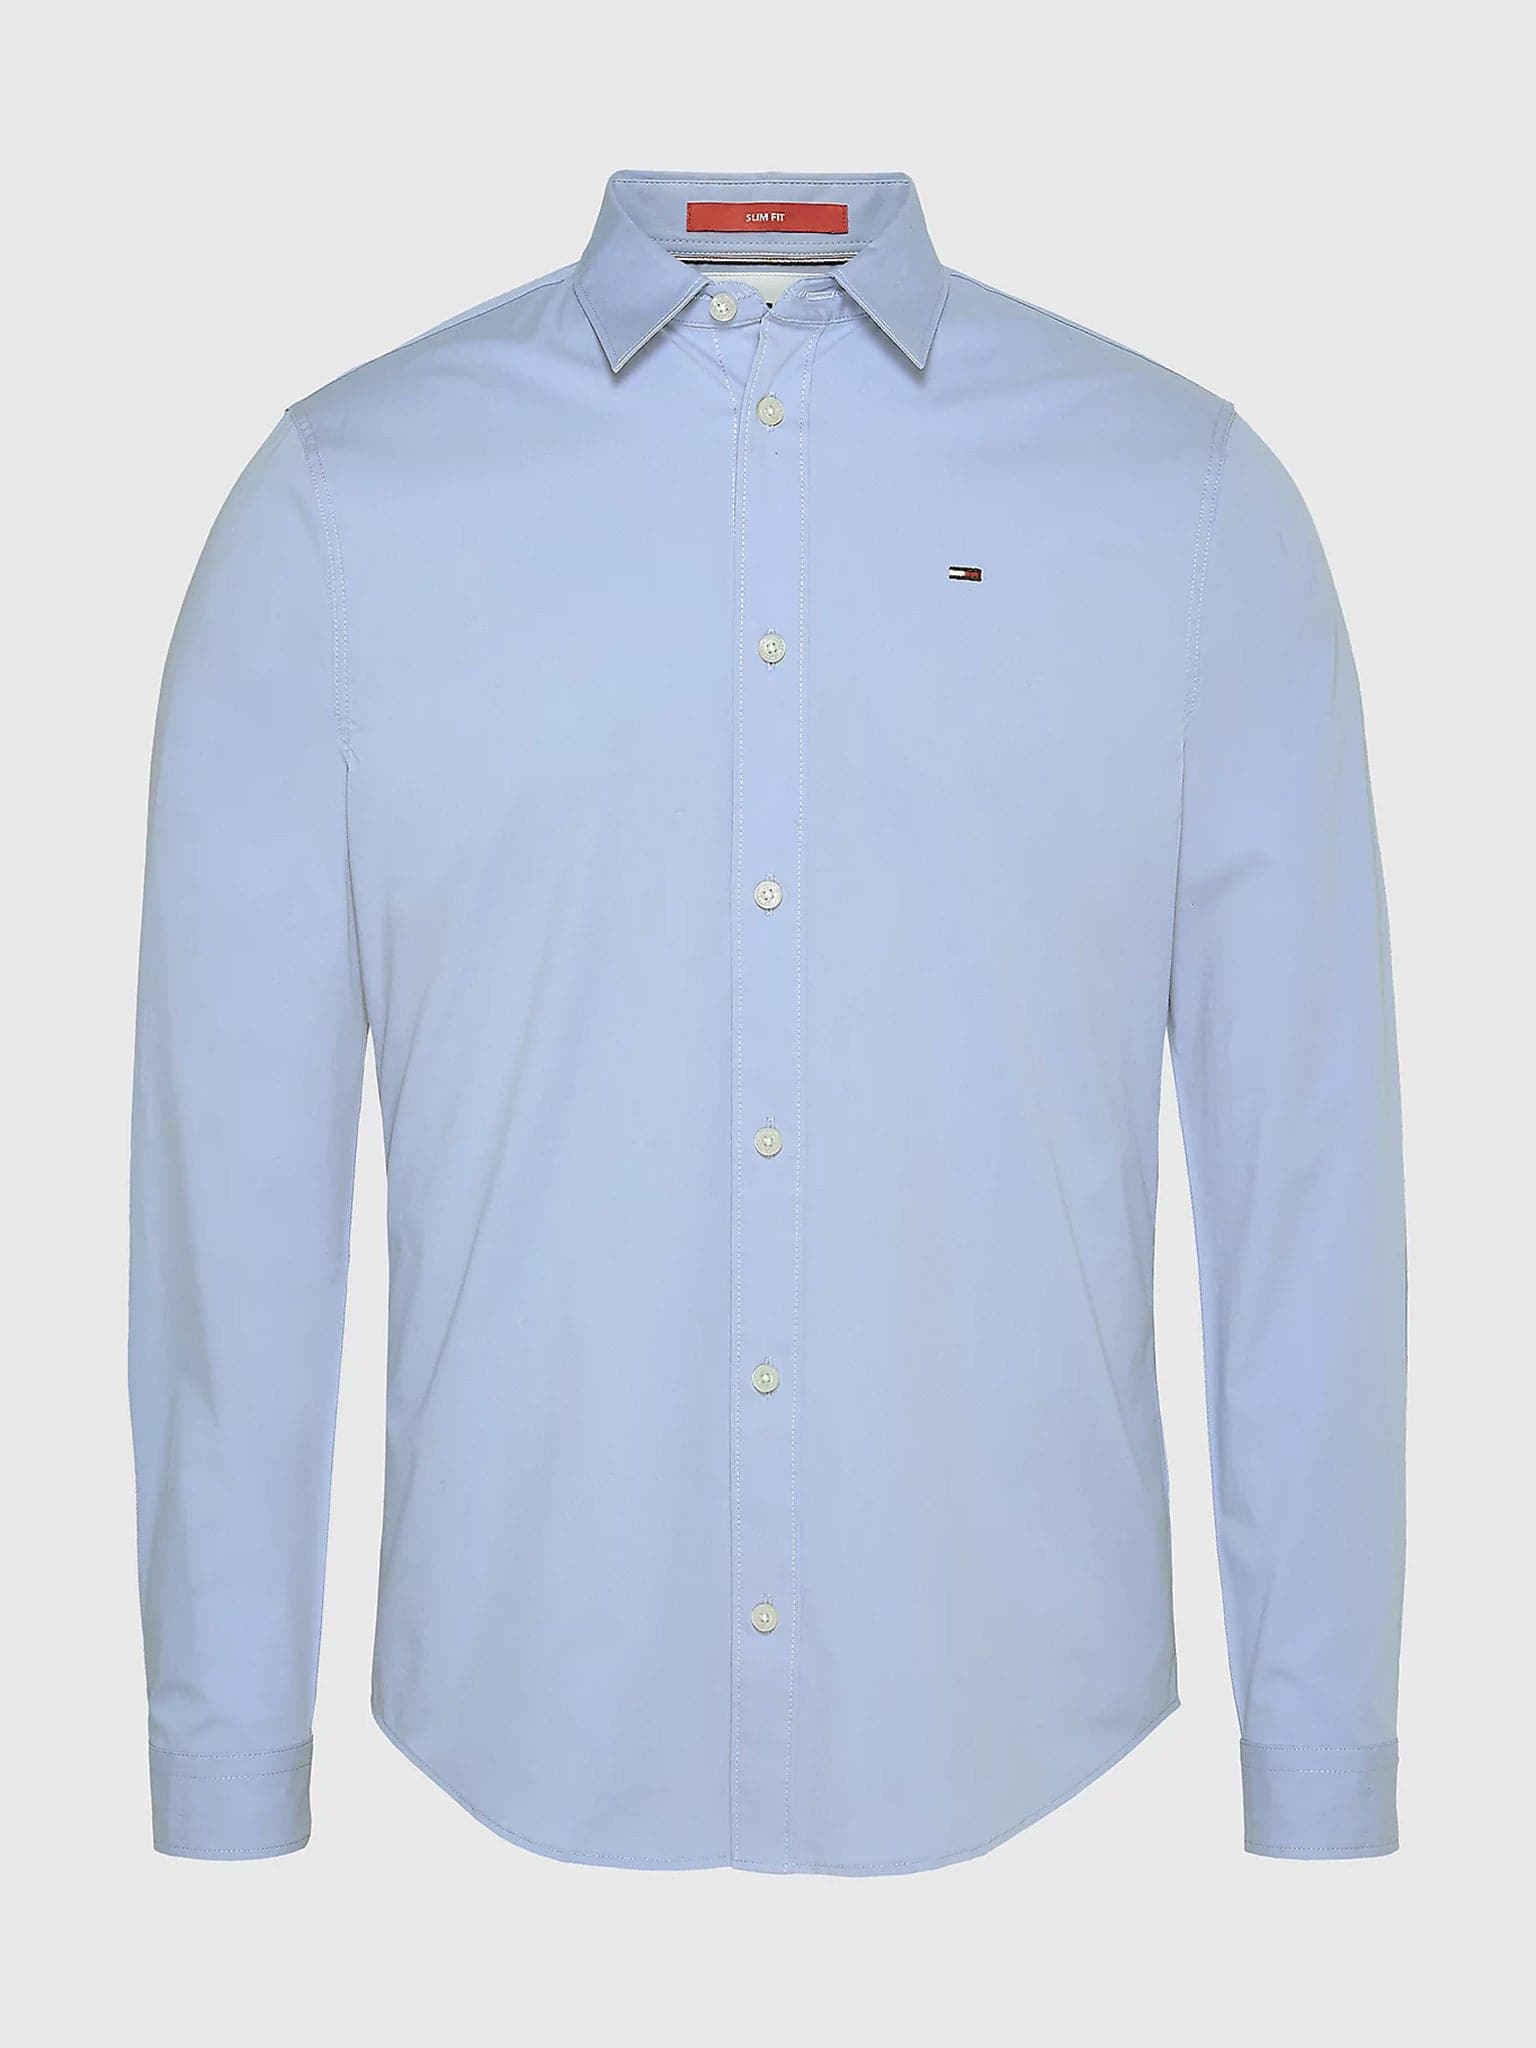 Ανδρικό πουκάμισο TJM ORIGINAL STRETCH SHIRT DM0DM04405556 | DM0DM04405556